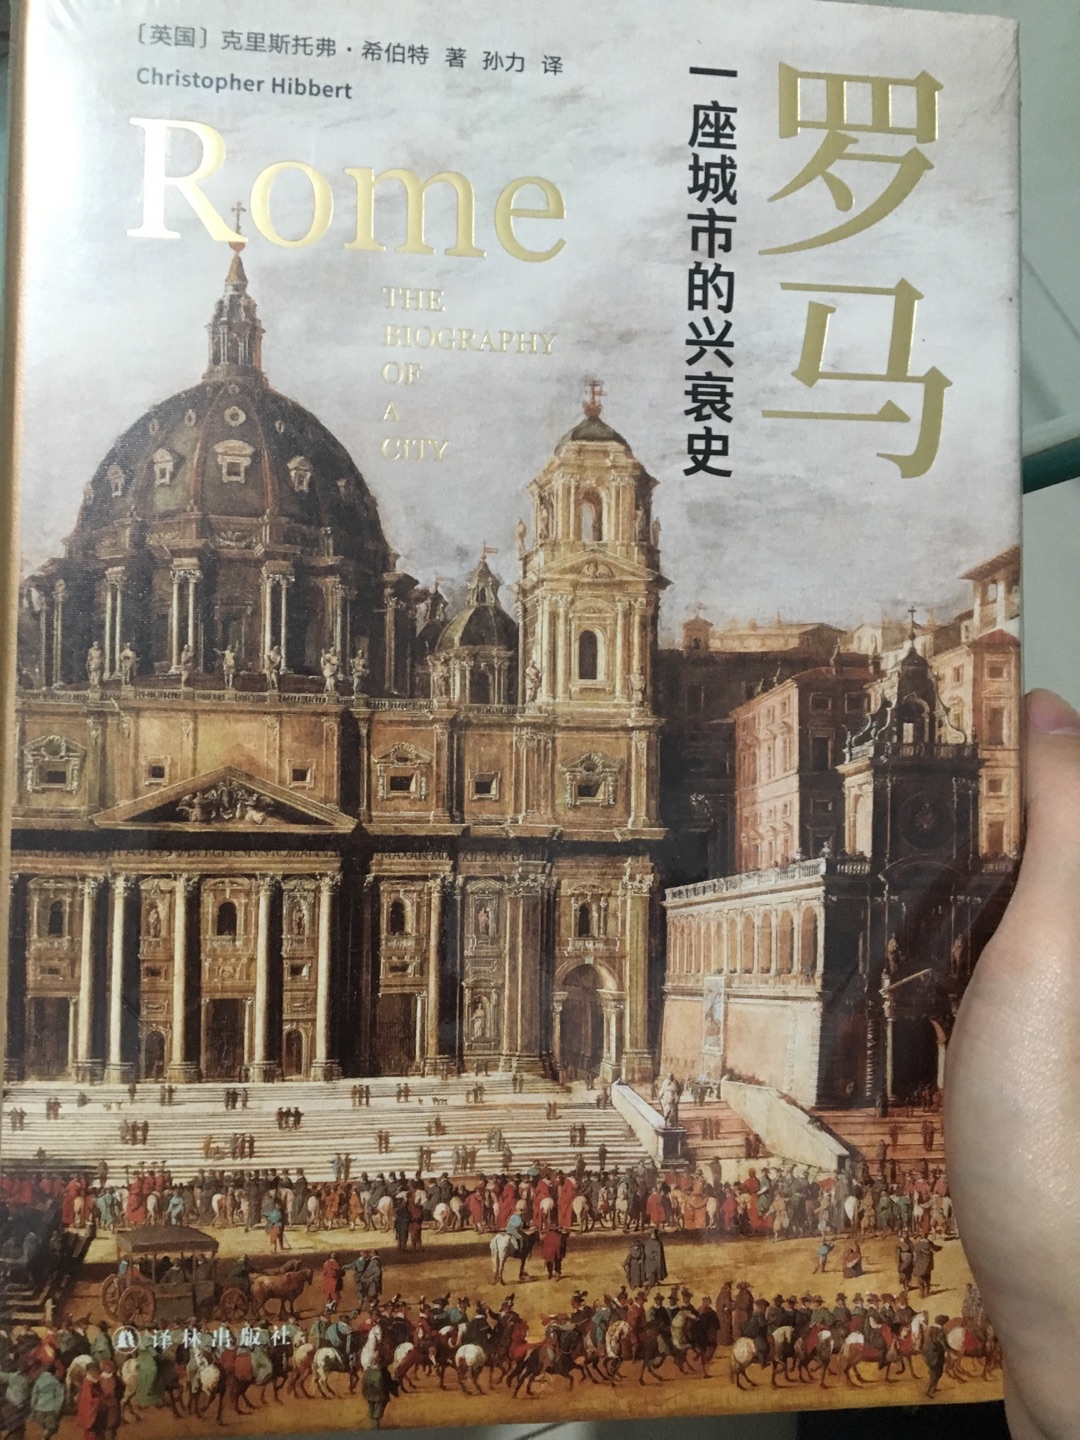 的物流很快，包装完好。本书是一部引人入胜的简史，500多页的篇幅，除了将罗马前后2千多年从古罗马建城到二战期间的重要历史人物与事件都介绍了一遍，后面的注释还能用作罗马古迹景点的旅行手册，非常值得推荐